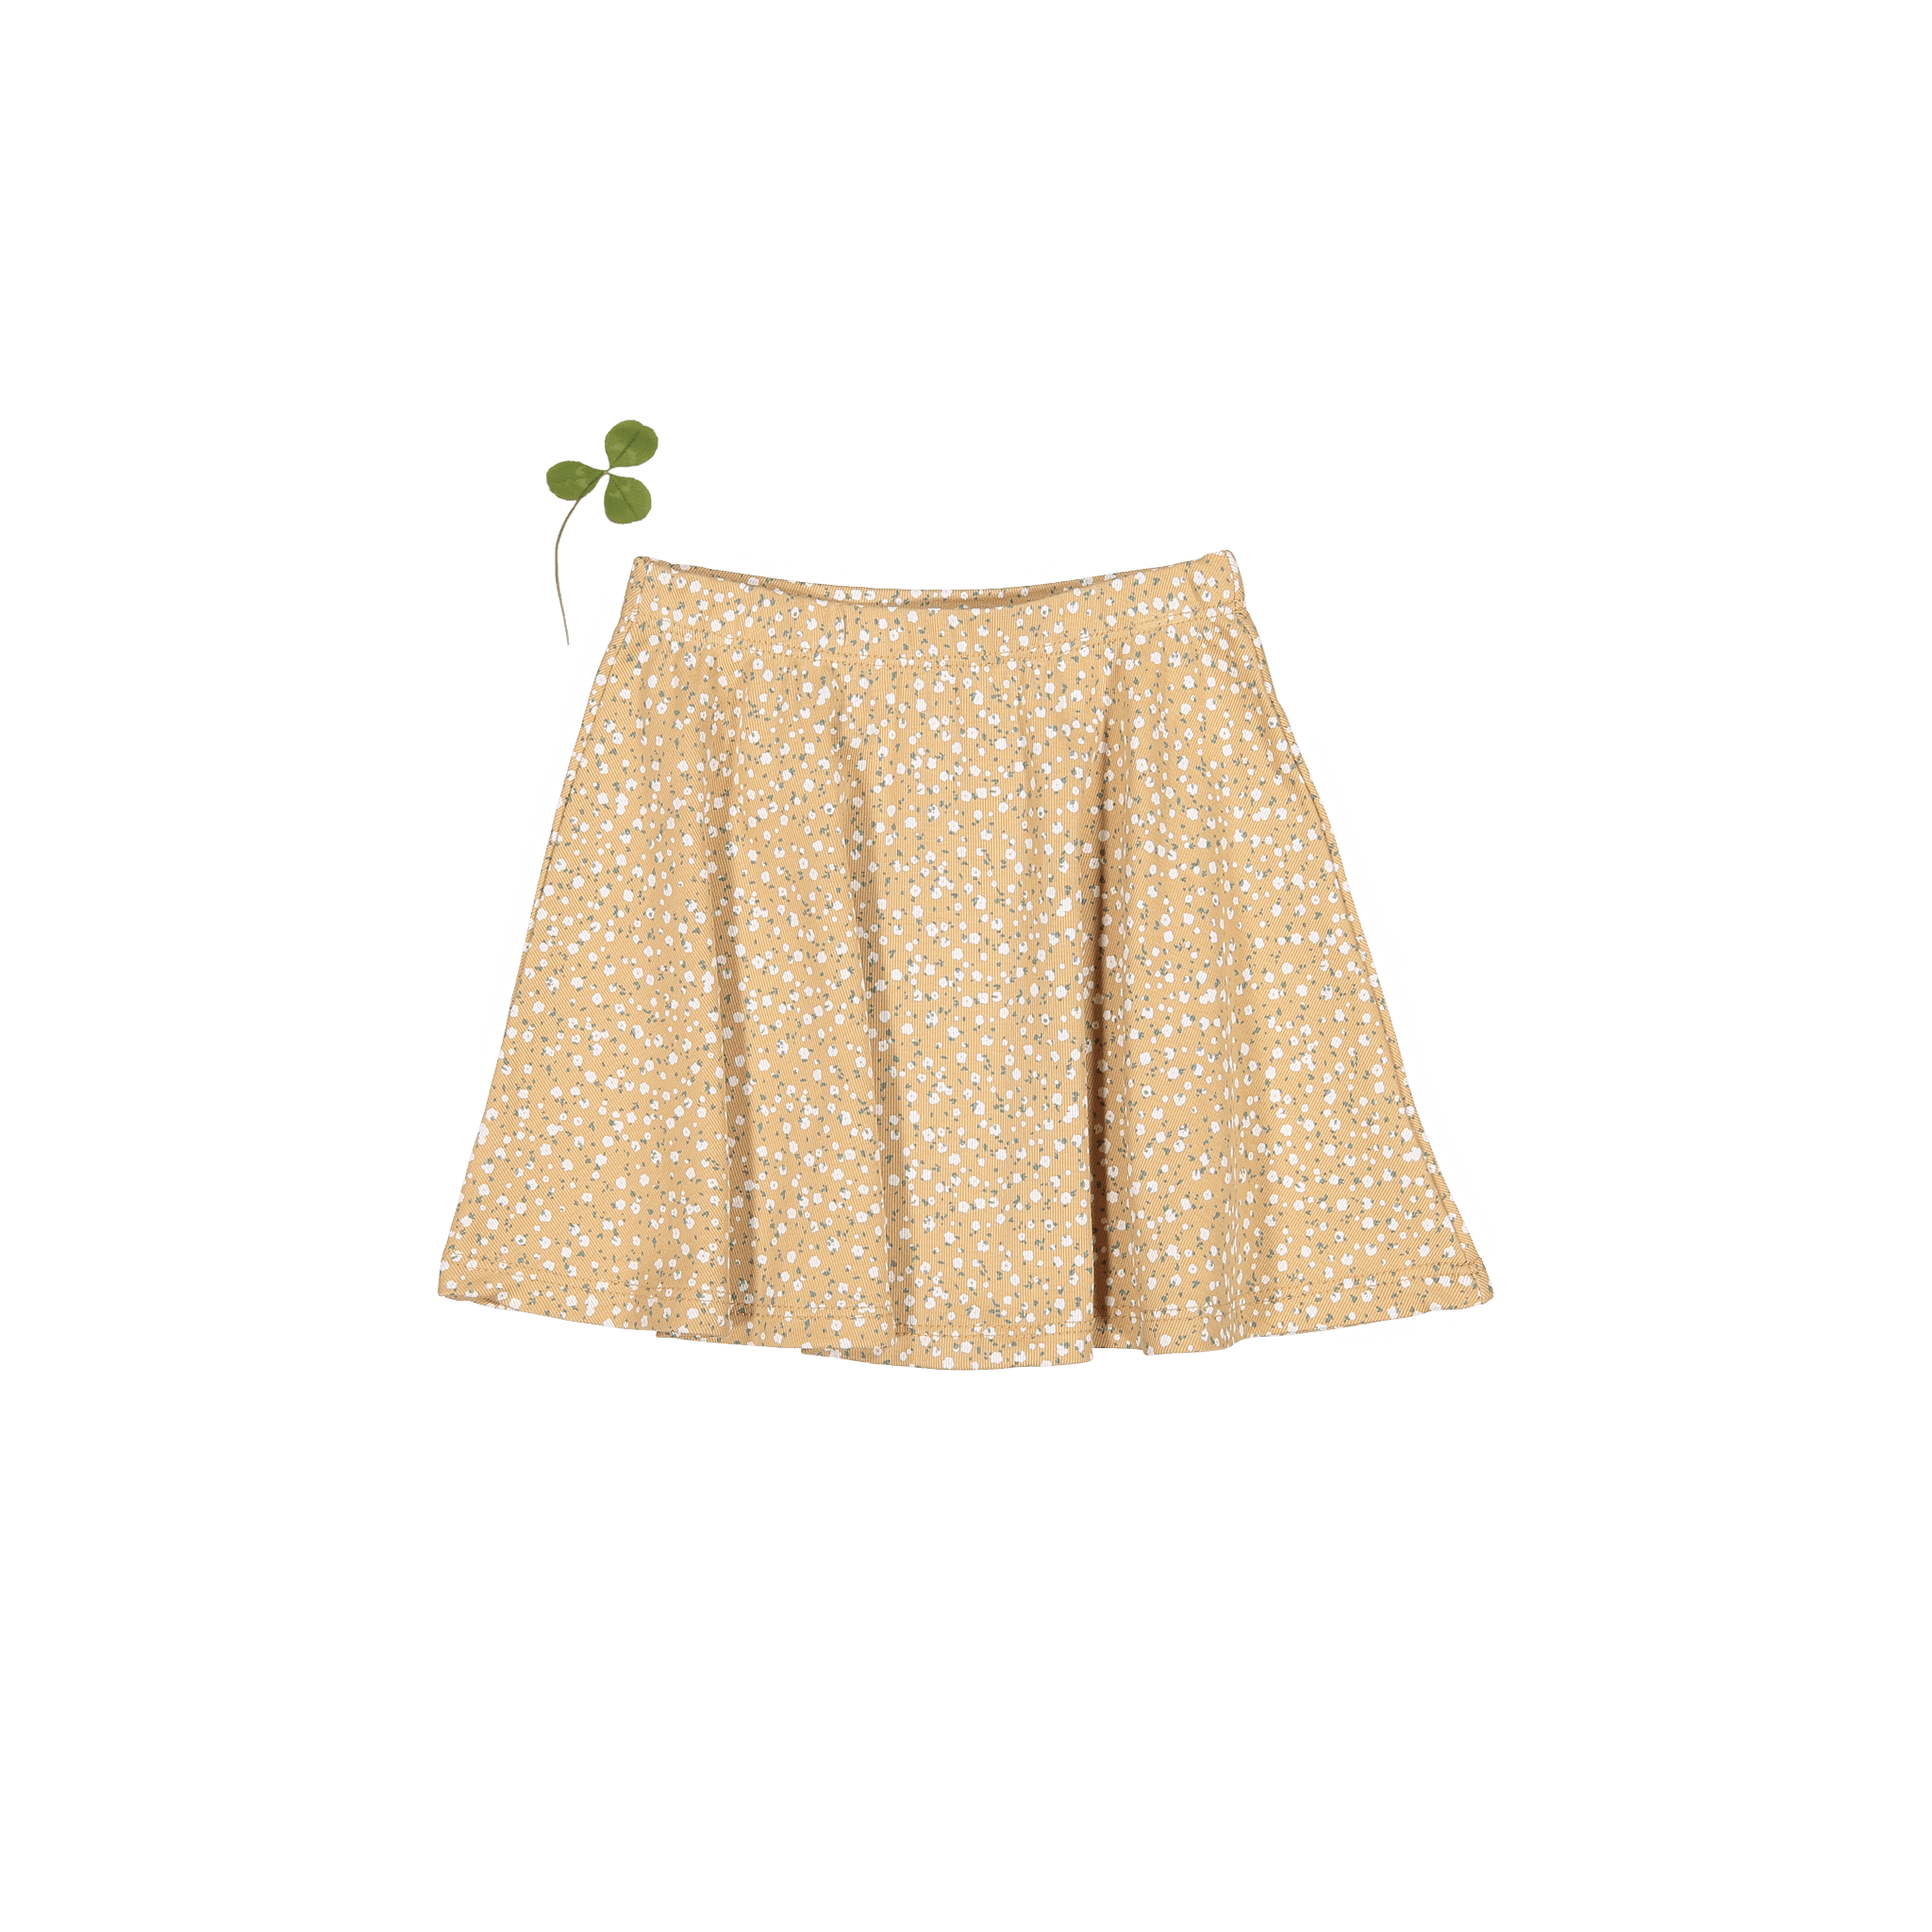 The Printed Skirt - Tan Bud